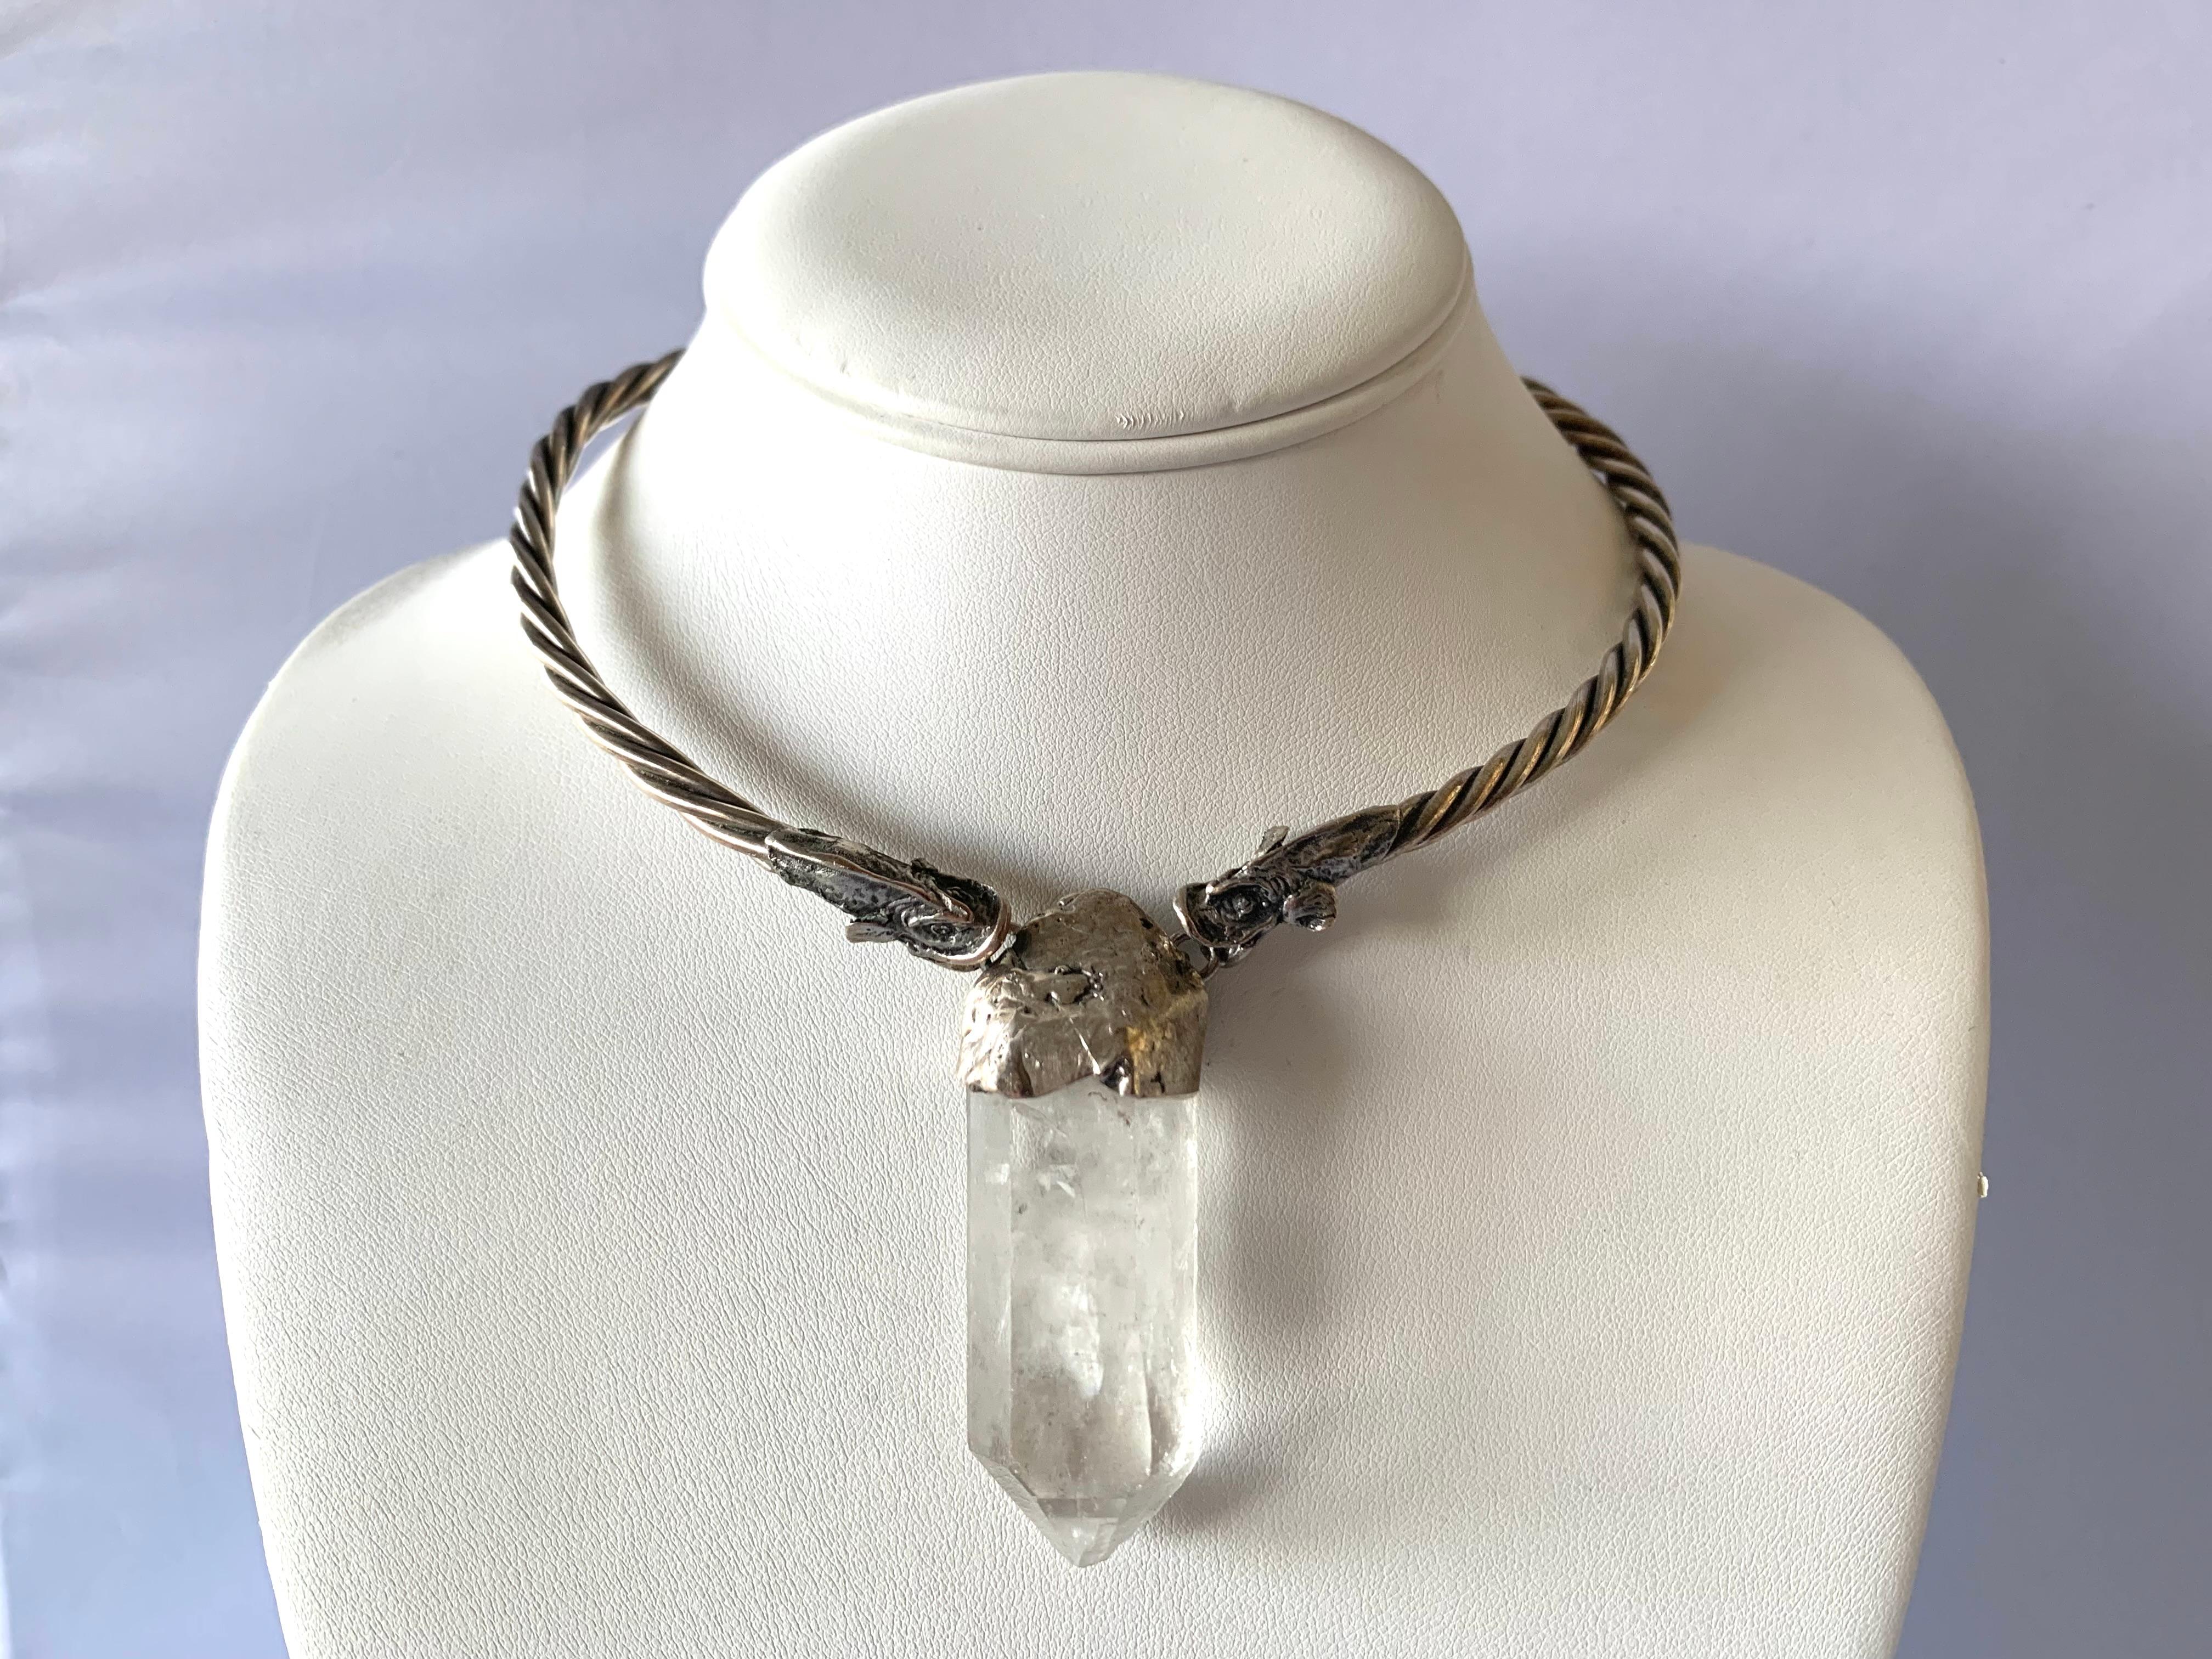 Brilliant Cut Mythical Fish Rock Crystal Obelisk Necklace For Sale